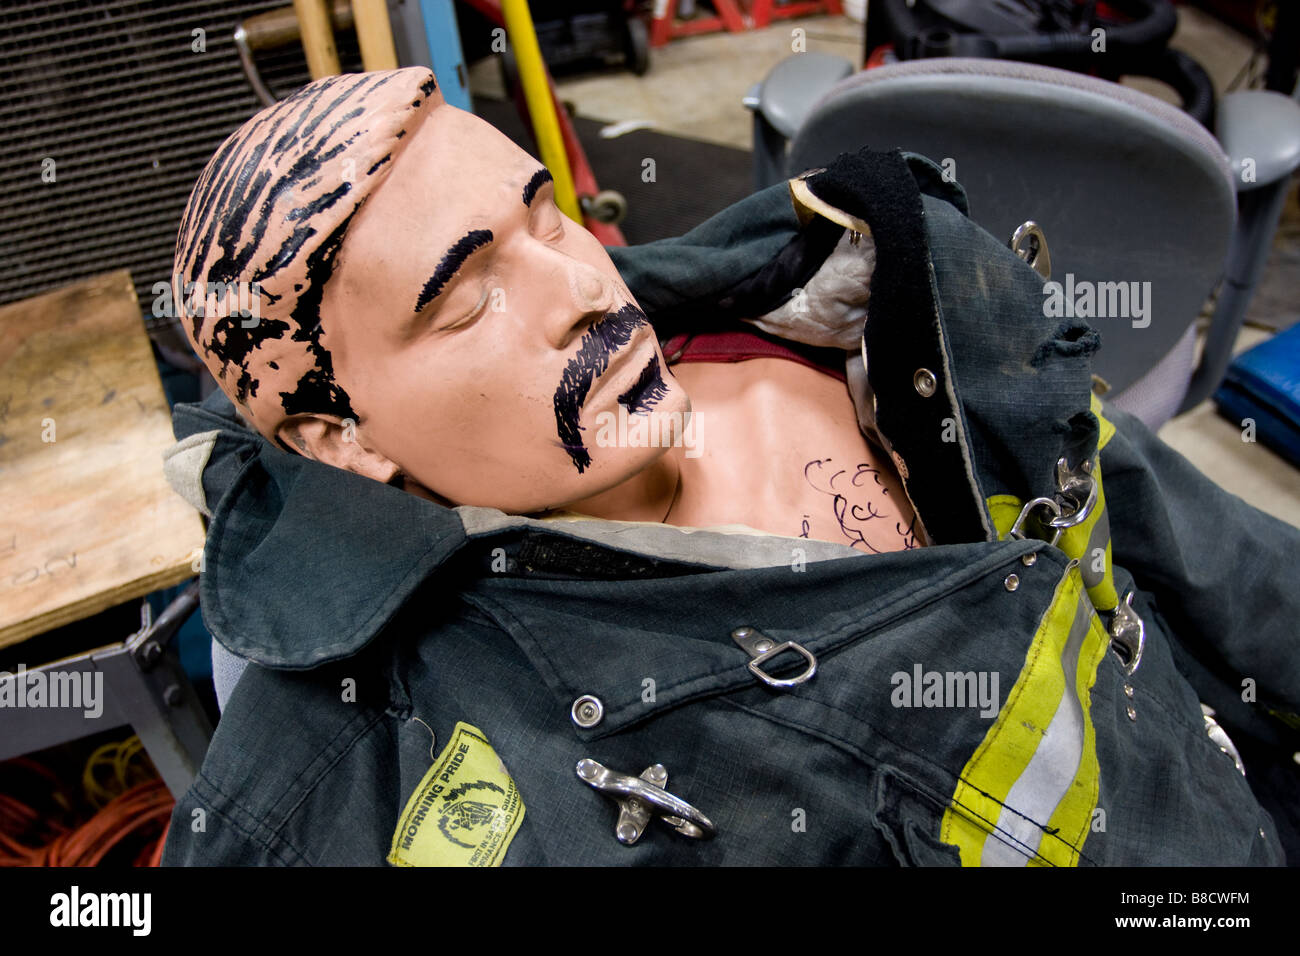 Ein Feuerwehrmann Trainingspuppe mit humorvollen Schnurrbart und Haare auf eine schützende Feuer Anzug gezeichnet Stockfoto